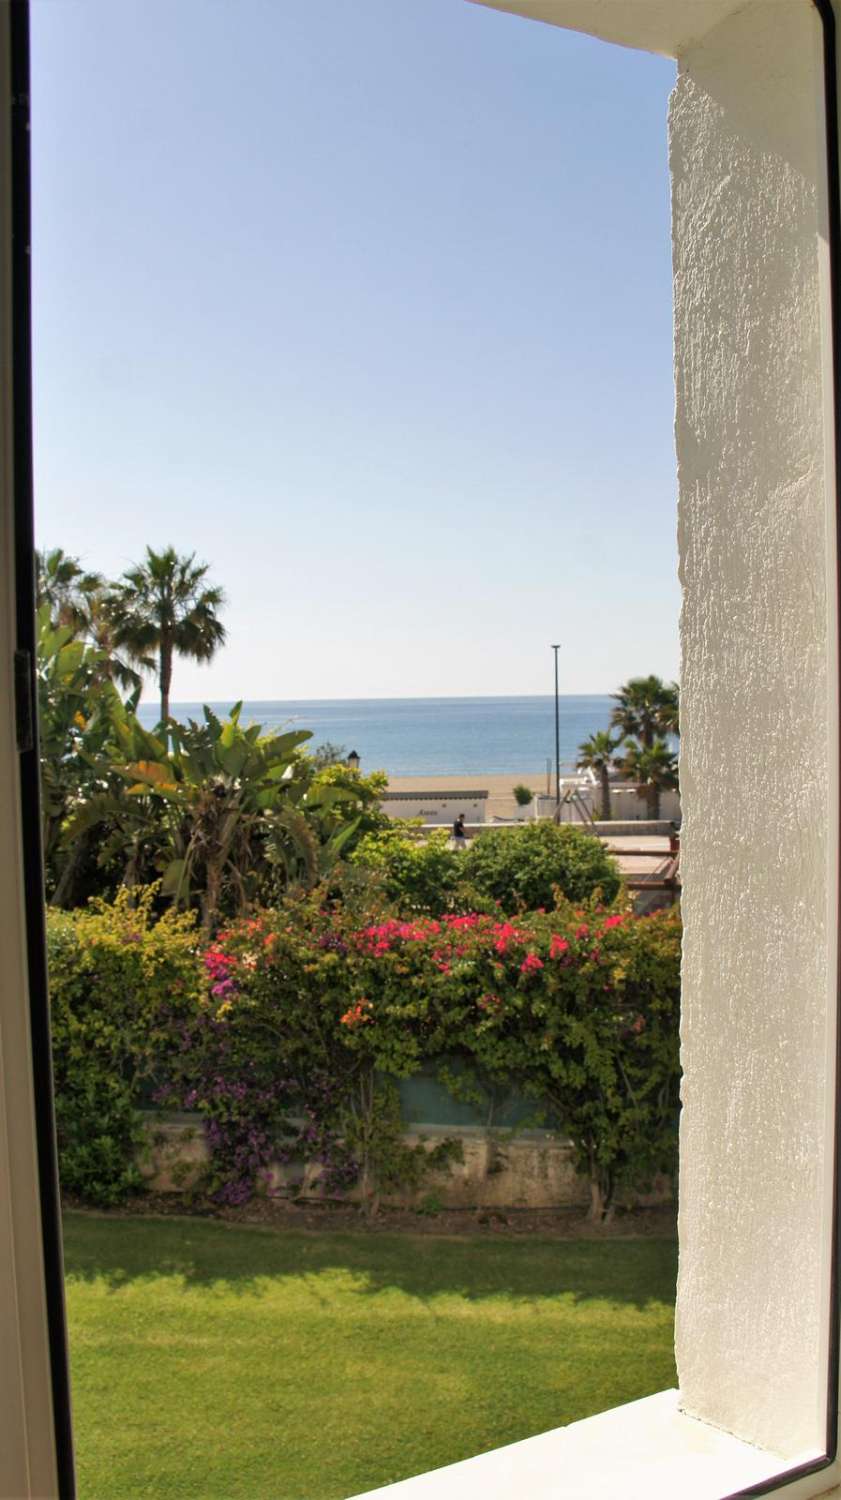 Feriebolig. Lejlighed med udsigt over havet. Puerto Banus, Marbella.